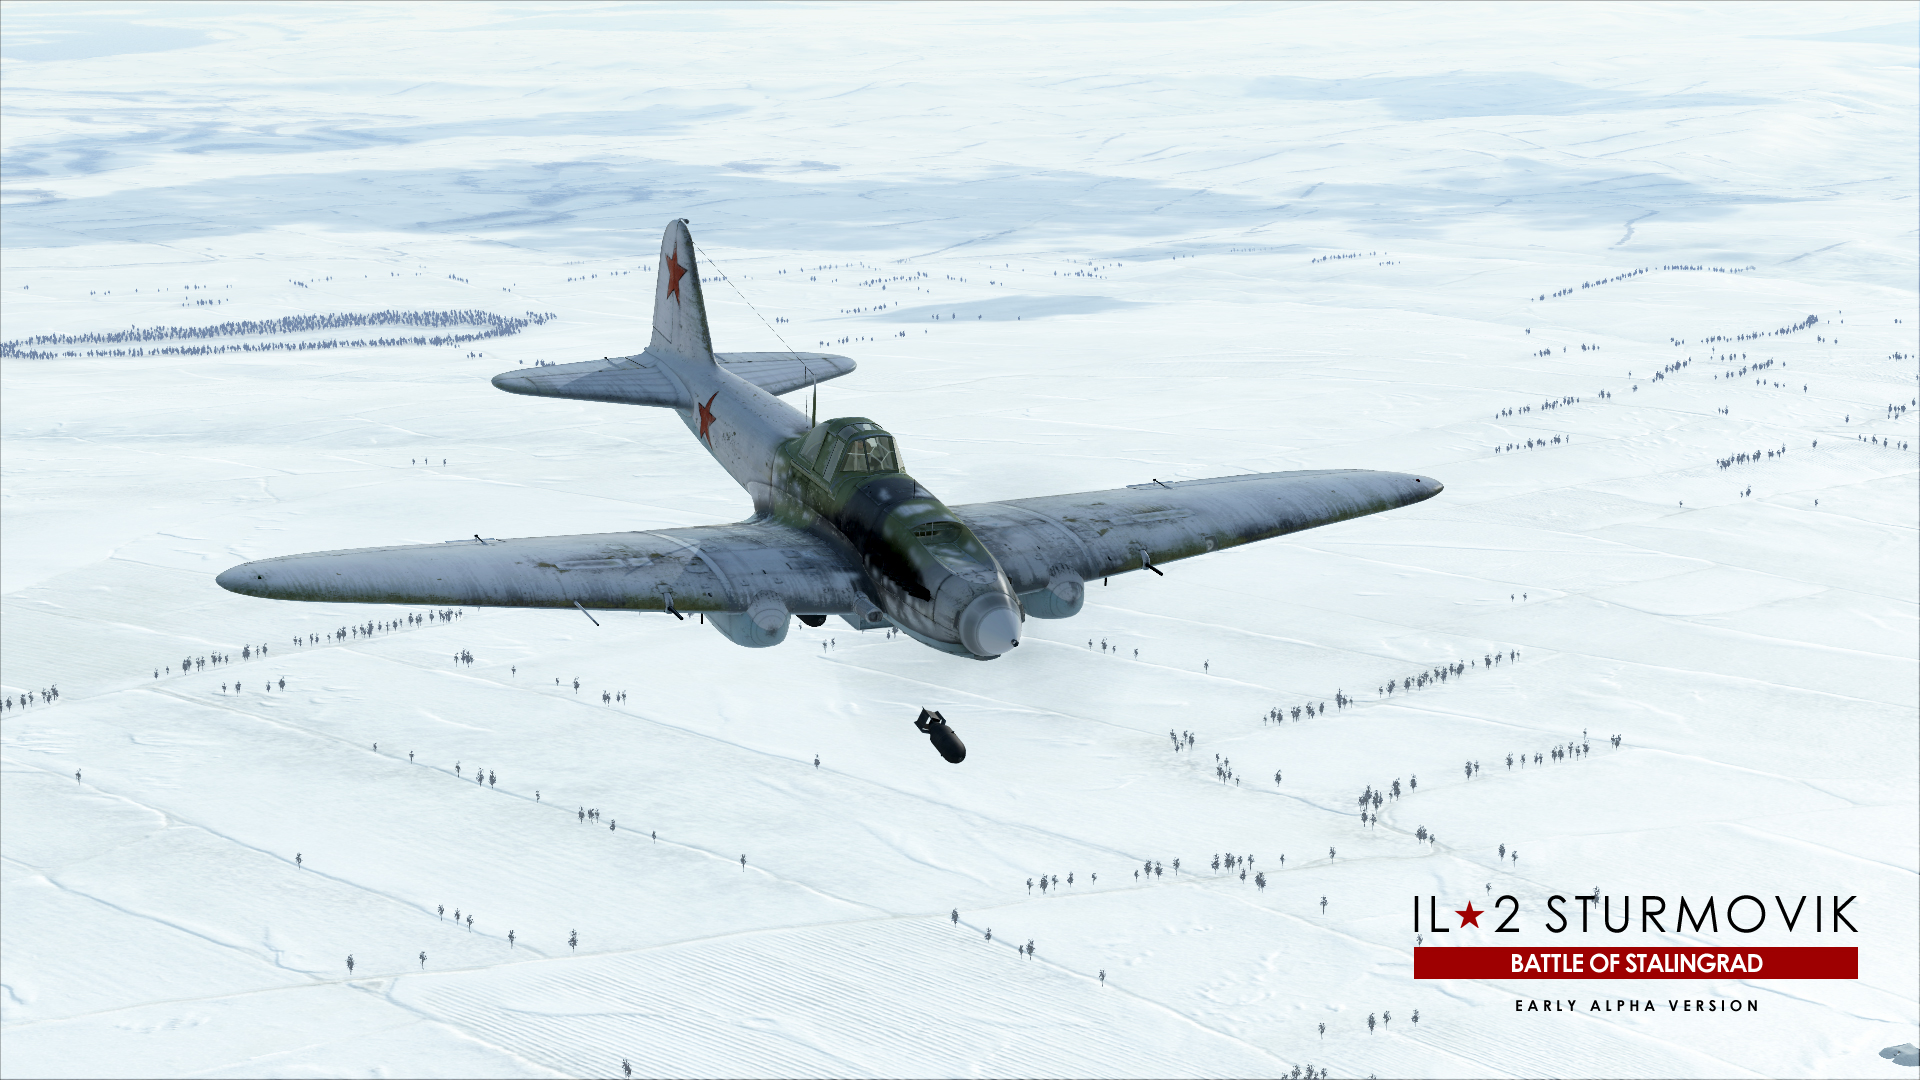 il-2 sturmovik battle of stalingrad ju87